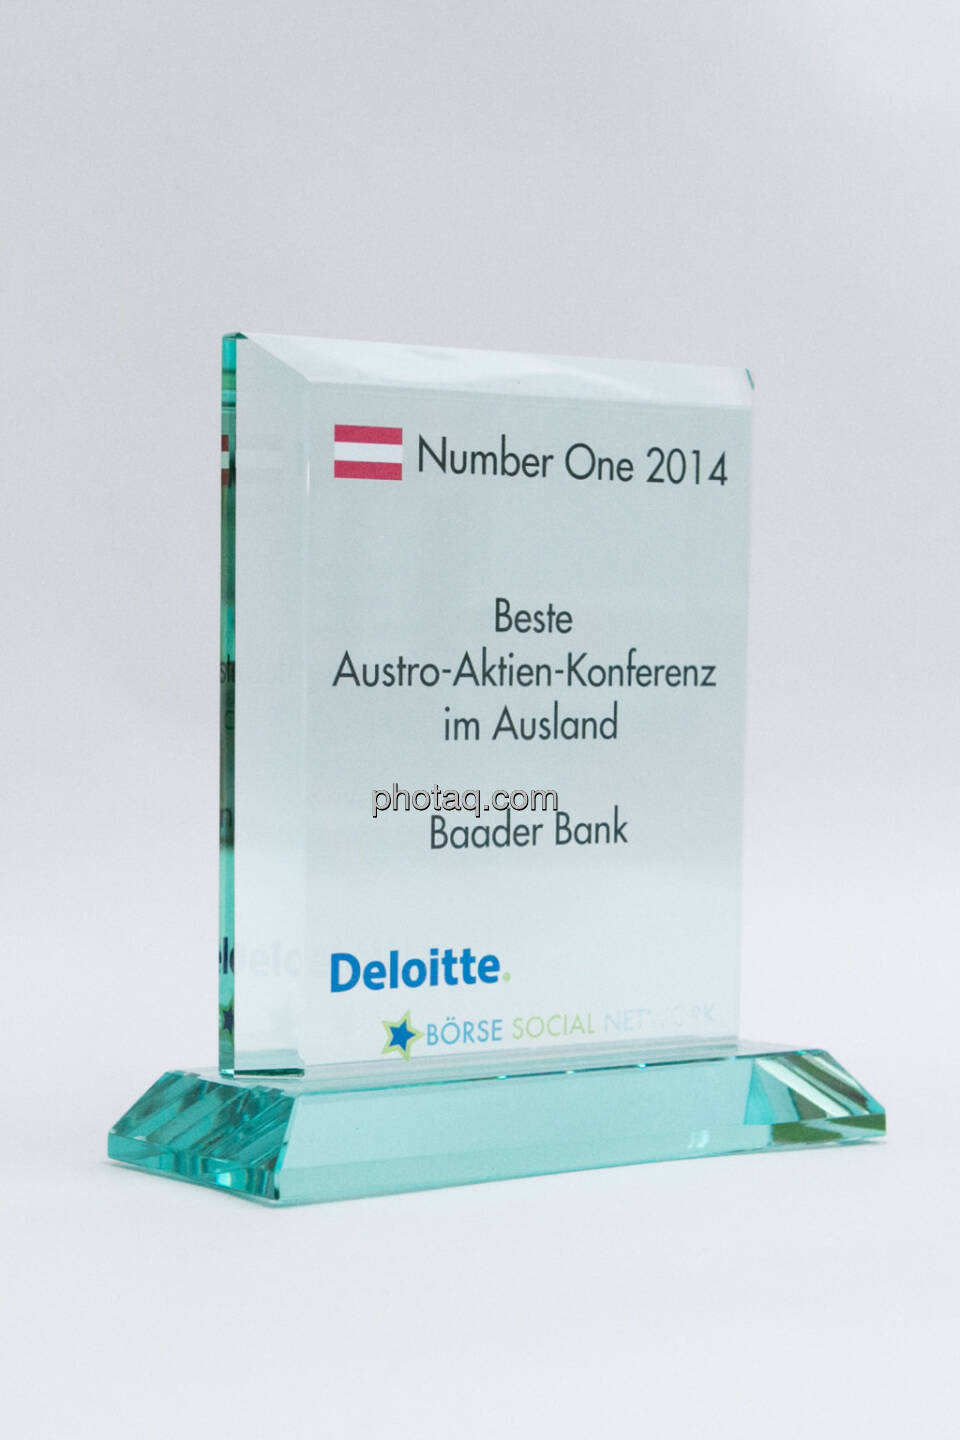 Beste Austro-Aktien-Konferenz im Ausland: Baader Bank